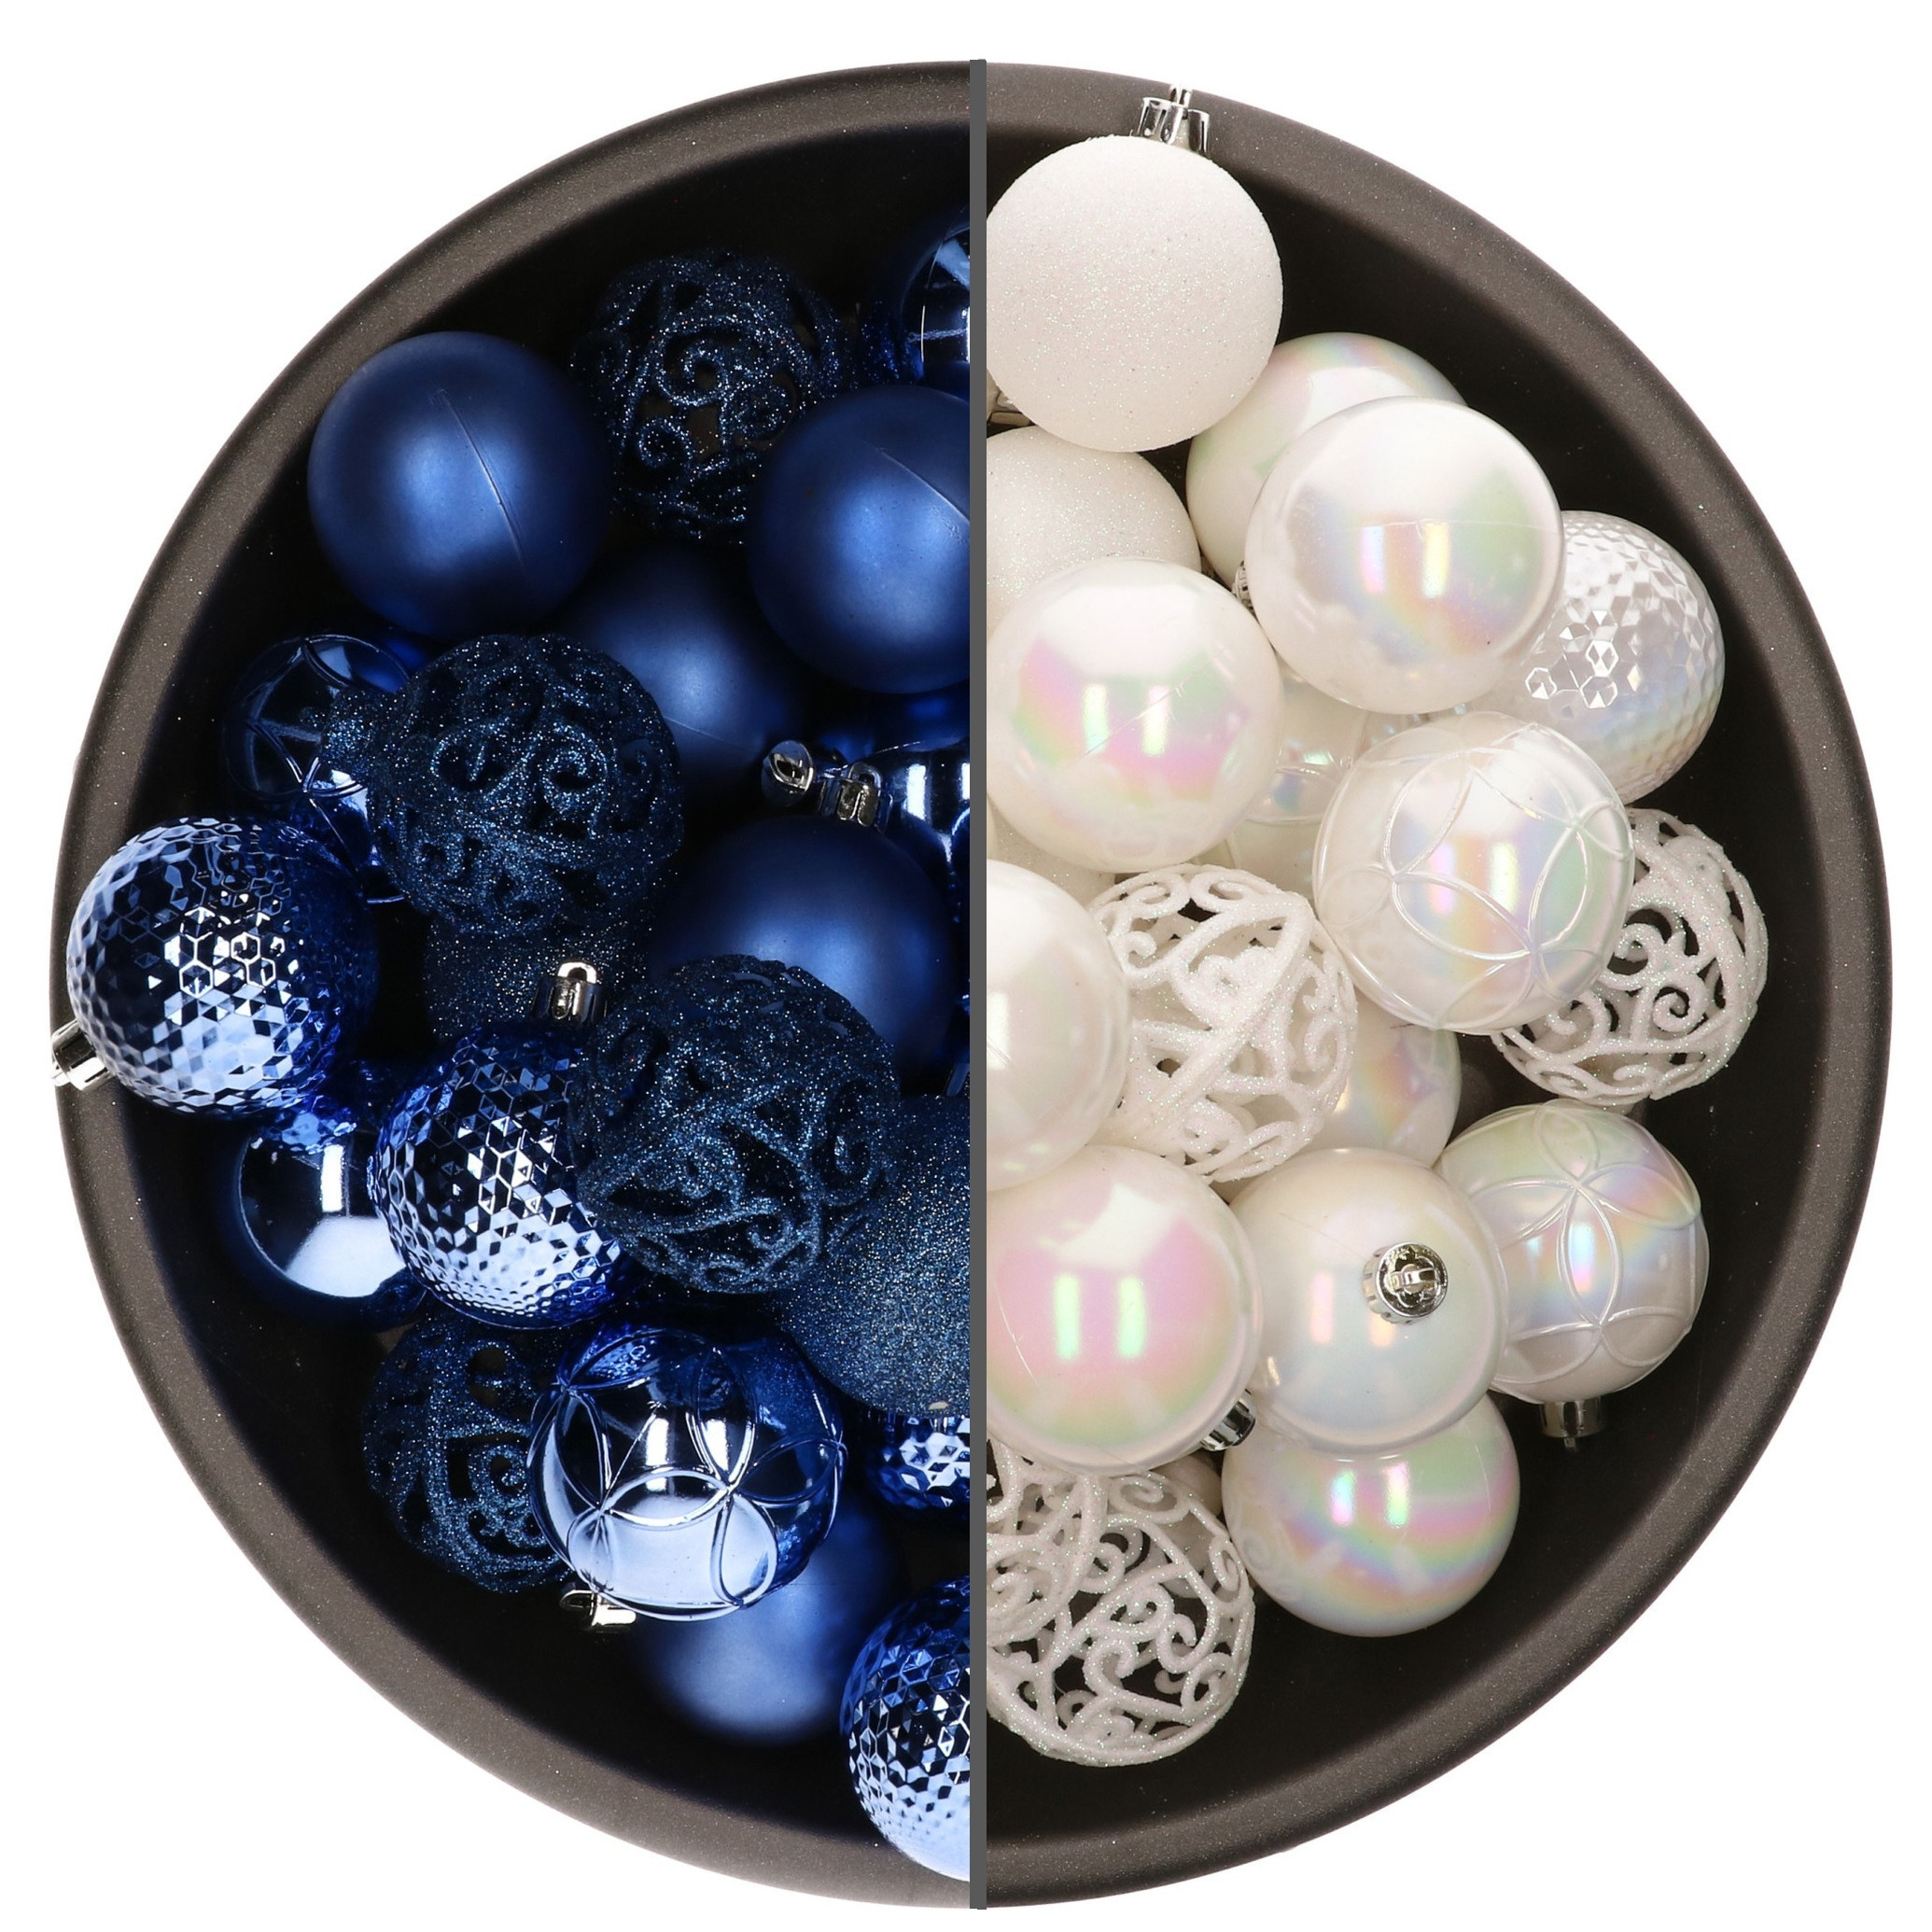 74x stuks kunststof kerstballen mix van parelmoer wit en kobalt blauw 6 cm